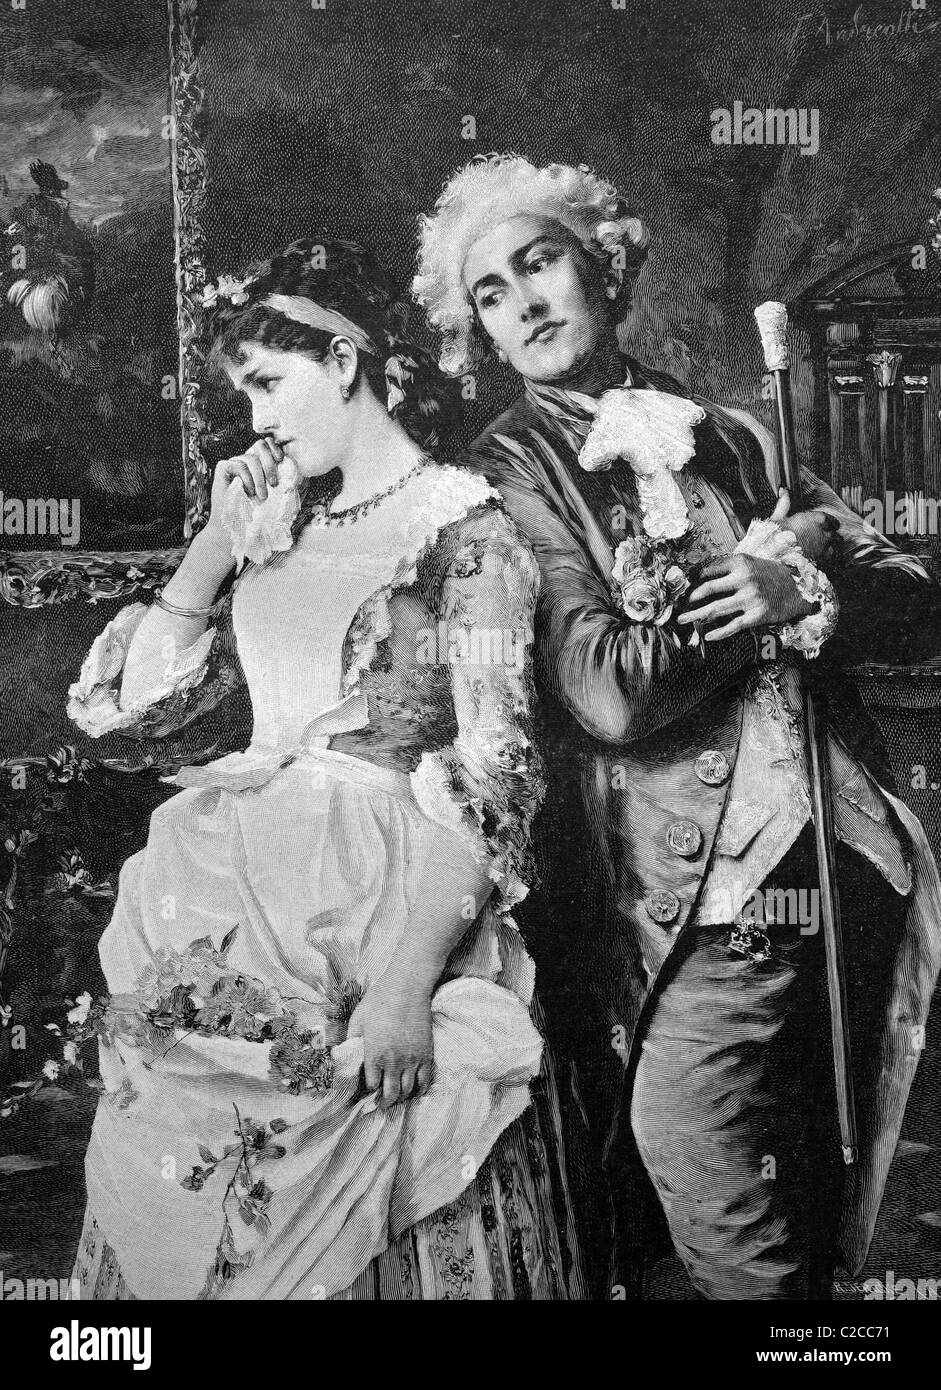 Bashful couple, historical illustration, ca. 1893 Stock Photo